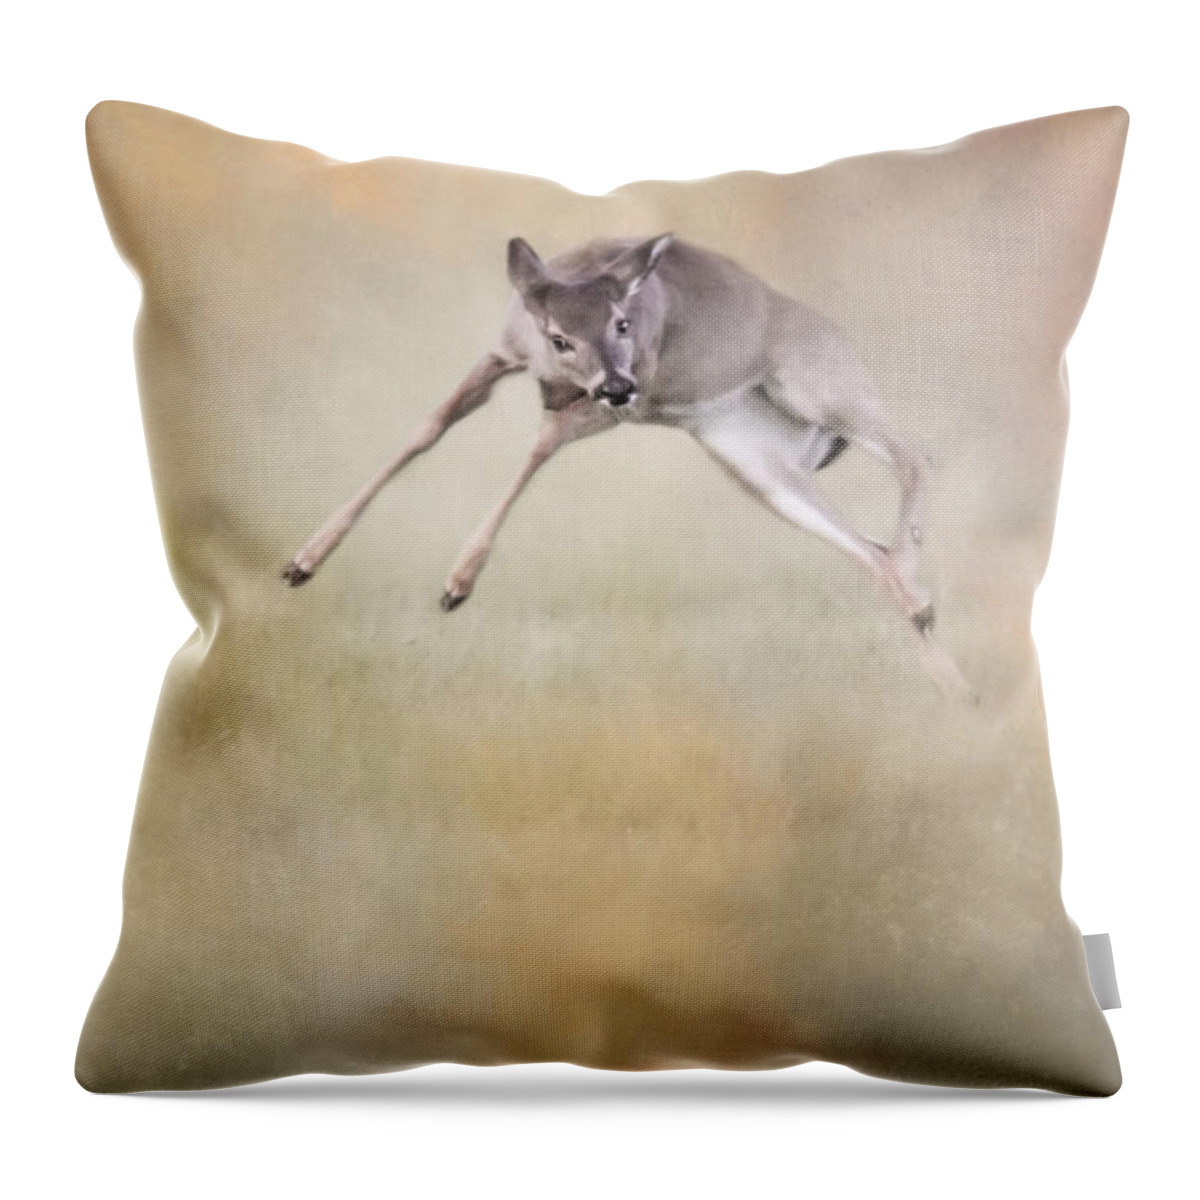 Deer Throw Pillow featuring the photograph Joyful Little Fawn 1 by Jai Johnson